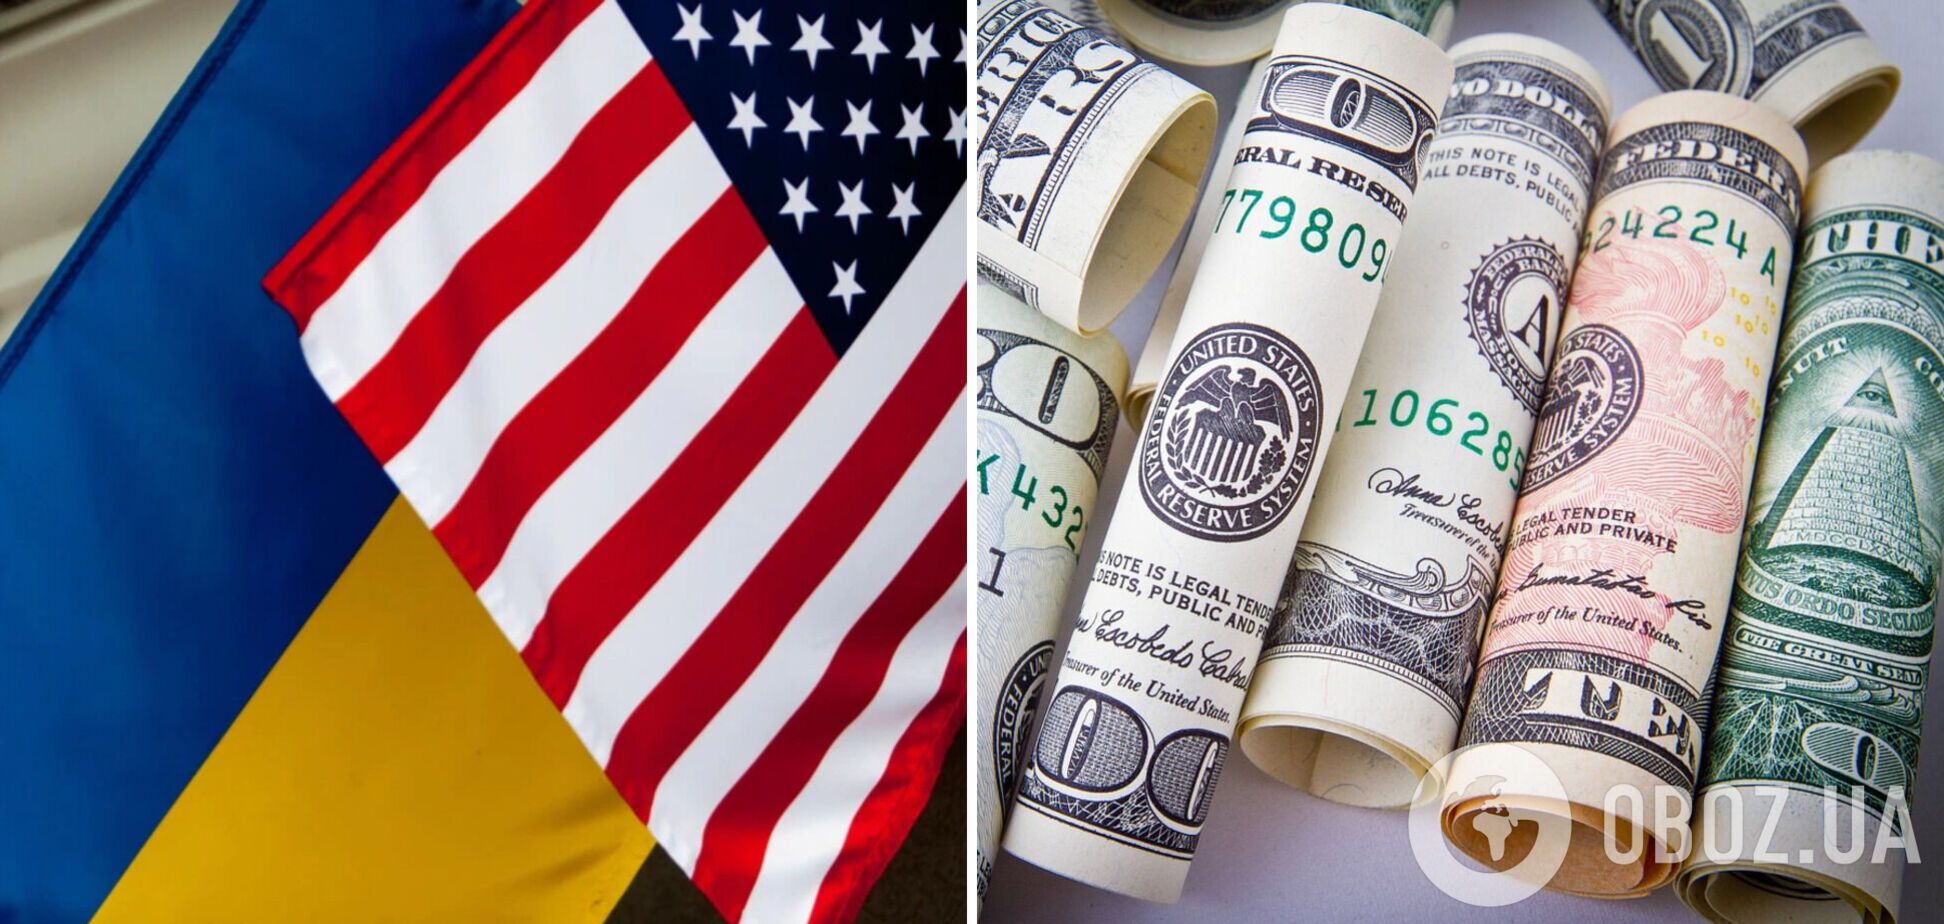 Украина получит от США еще 4,5 млрд долларов помощи